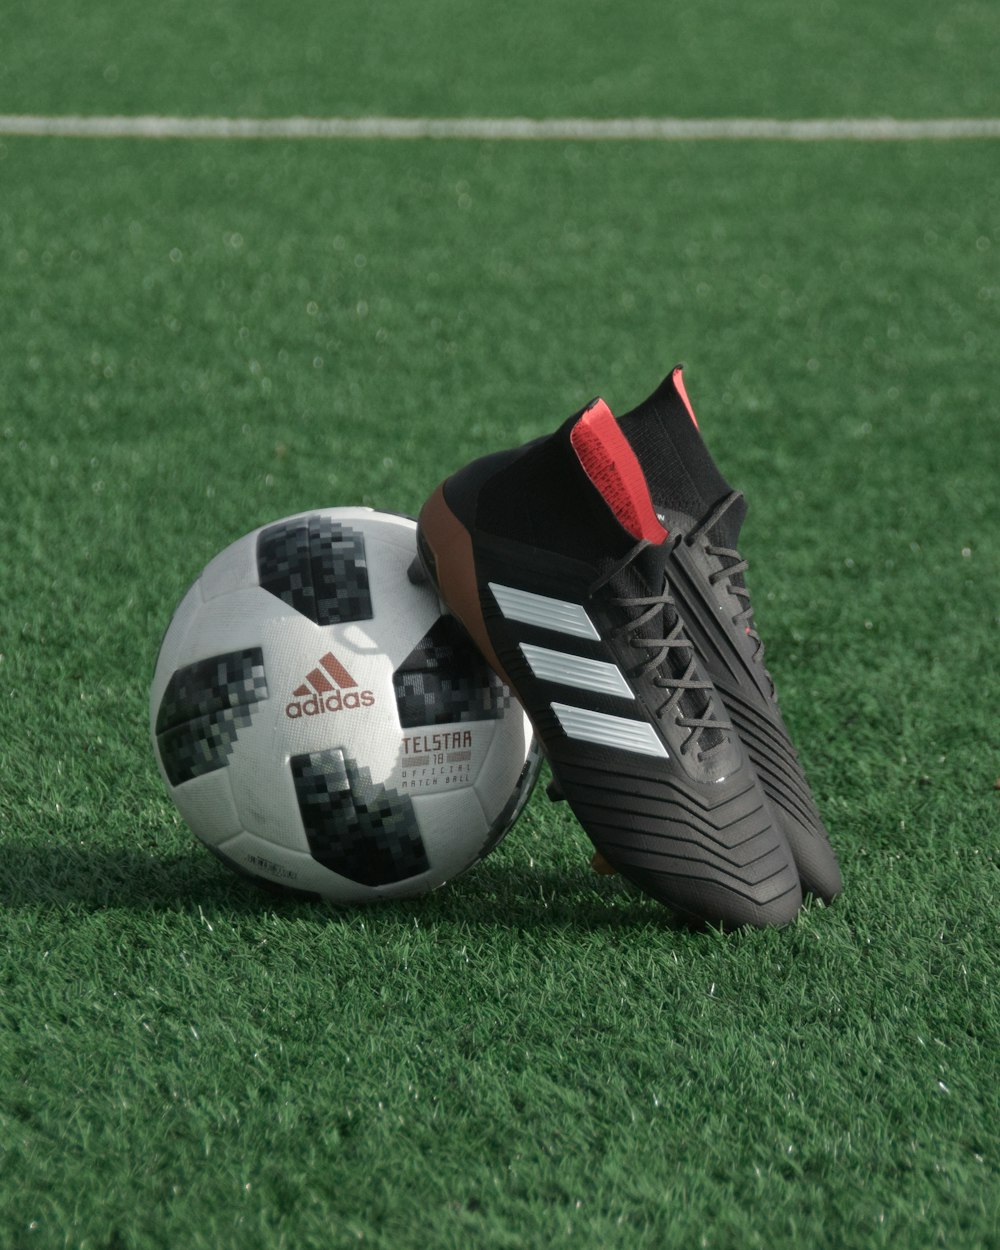 chuteiras pretas adidas apoiam-se na bola de futebol adidas branca e preta na grama verde